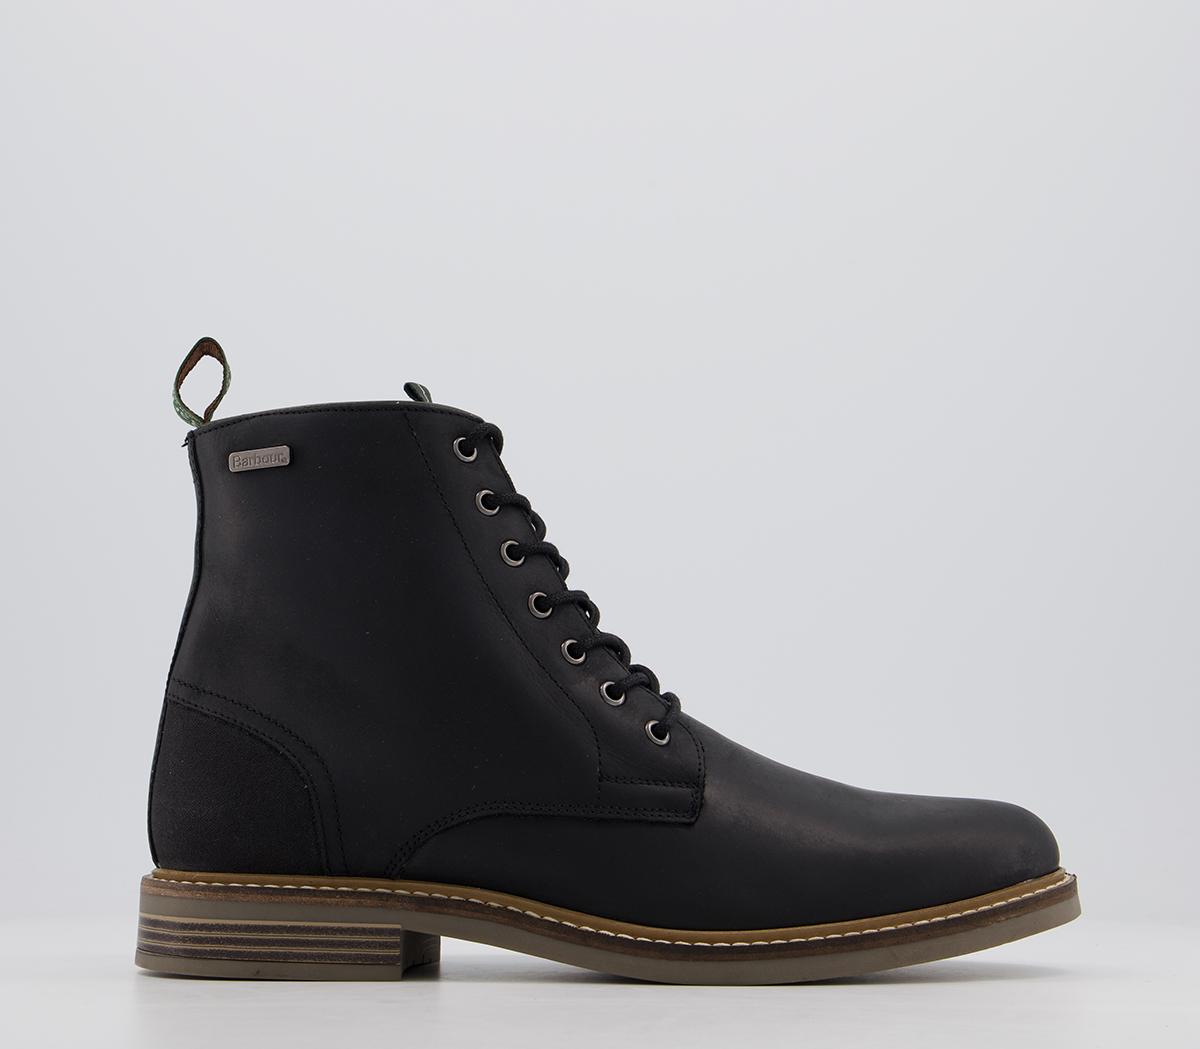 Barbour Seaham Lace Up Boots Black - Men’s Boots